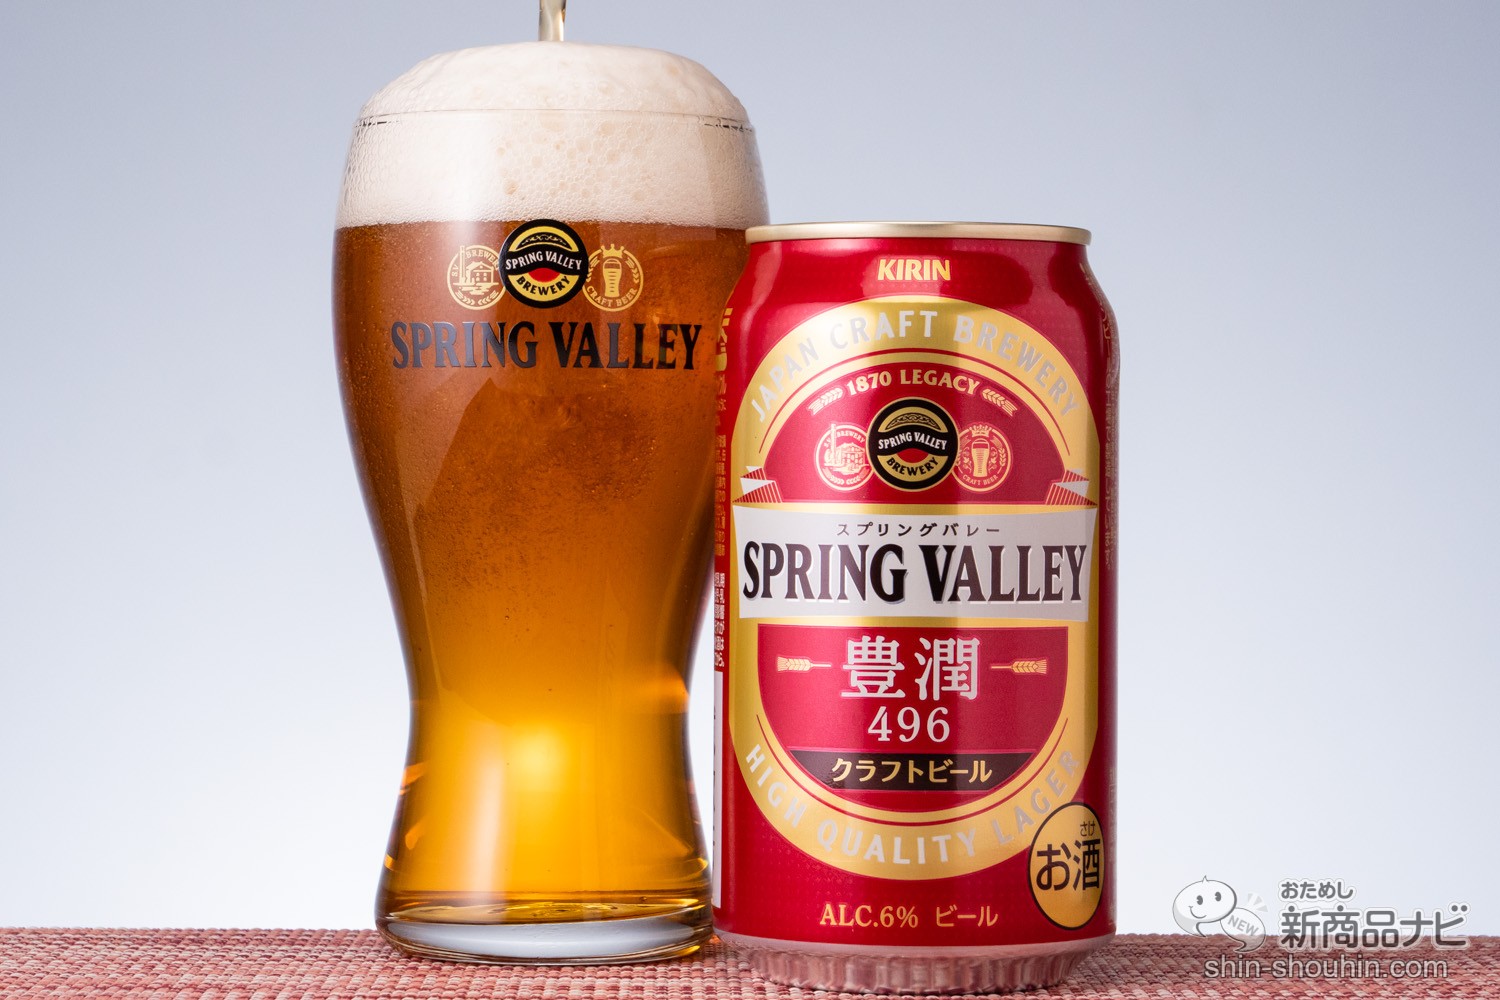 おためし新商品ナビ » Blog Archive » 自宅で飲める本格クラフトビール『SPRING VALLEY 豊潤＜496＞』は、鼻で飲む!?